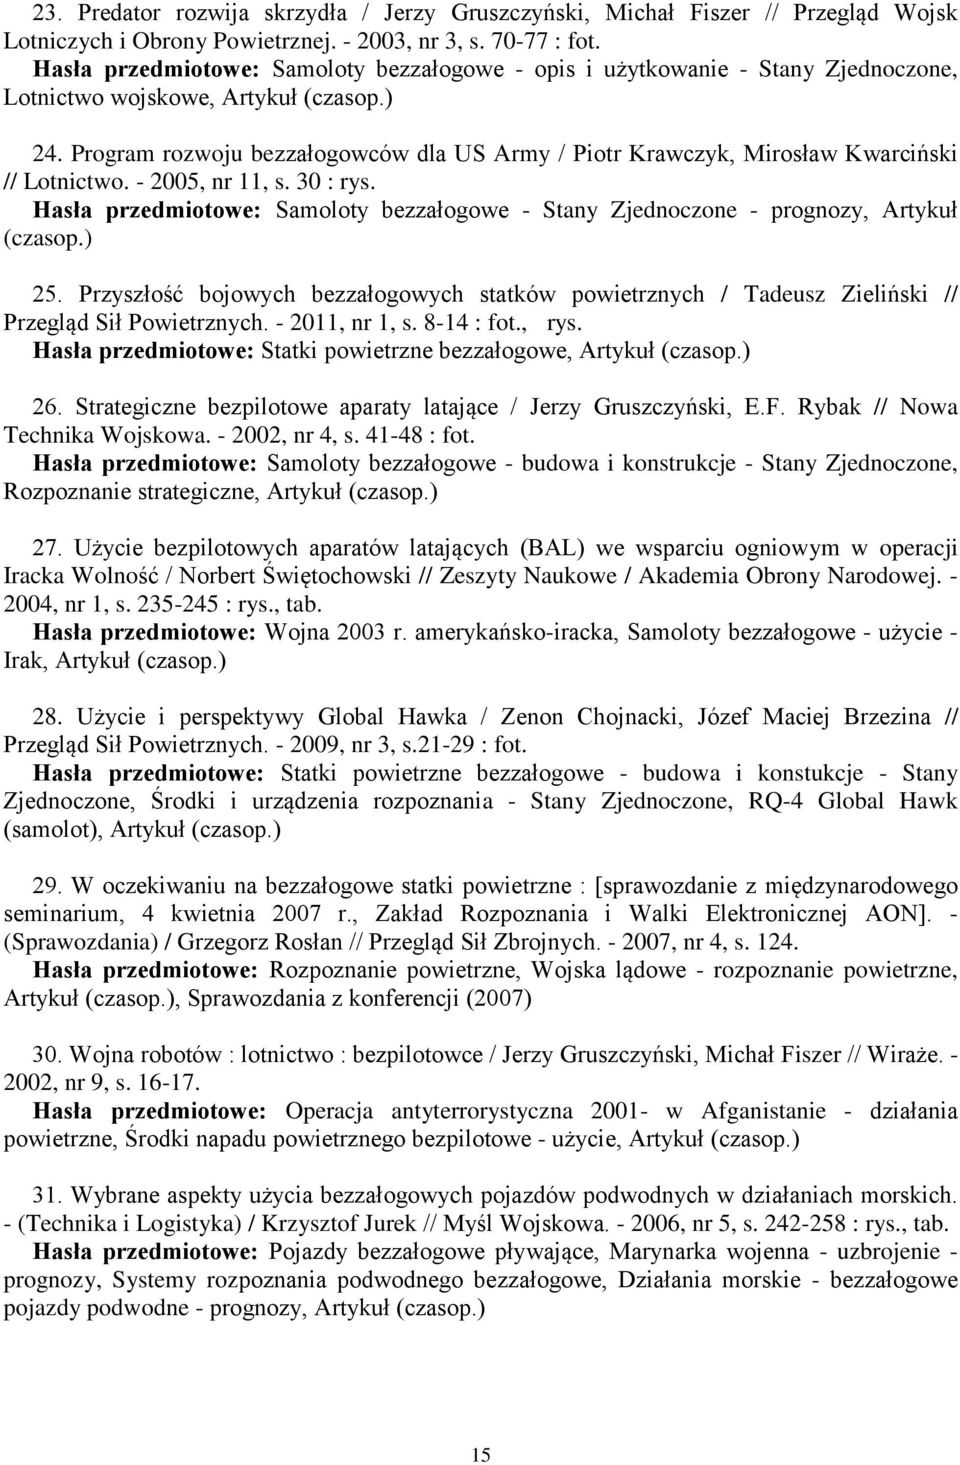 Program rozwoju bezzałogowców dla US Army / Piotr Krawczyk, Mirosław Kwarciński // Lotnictwo. - 2005, nr 11, s. 30 : rys.